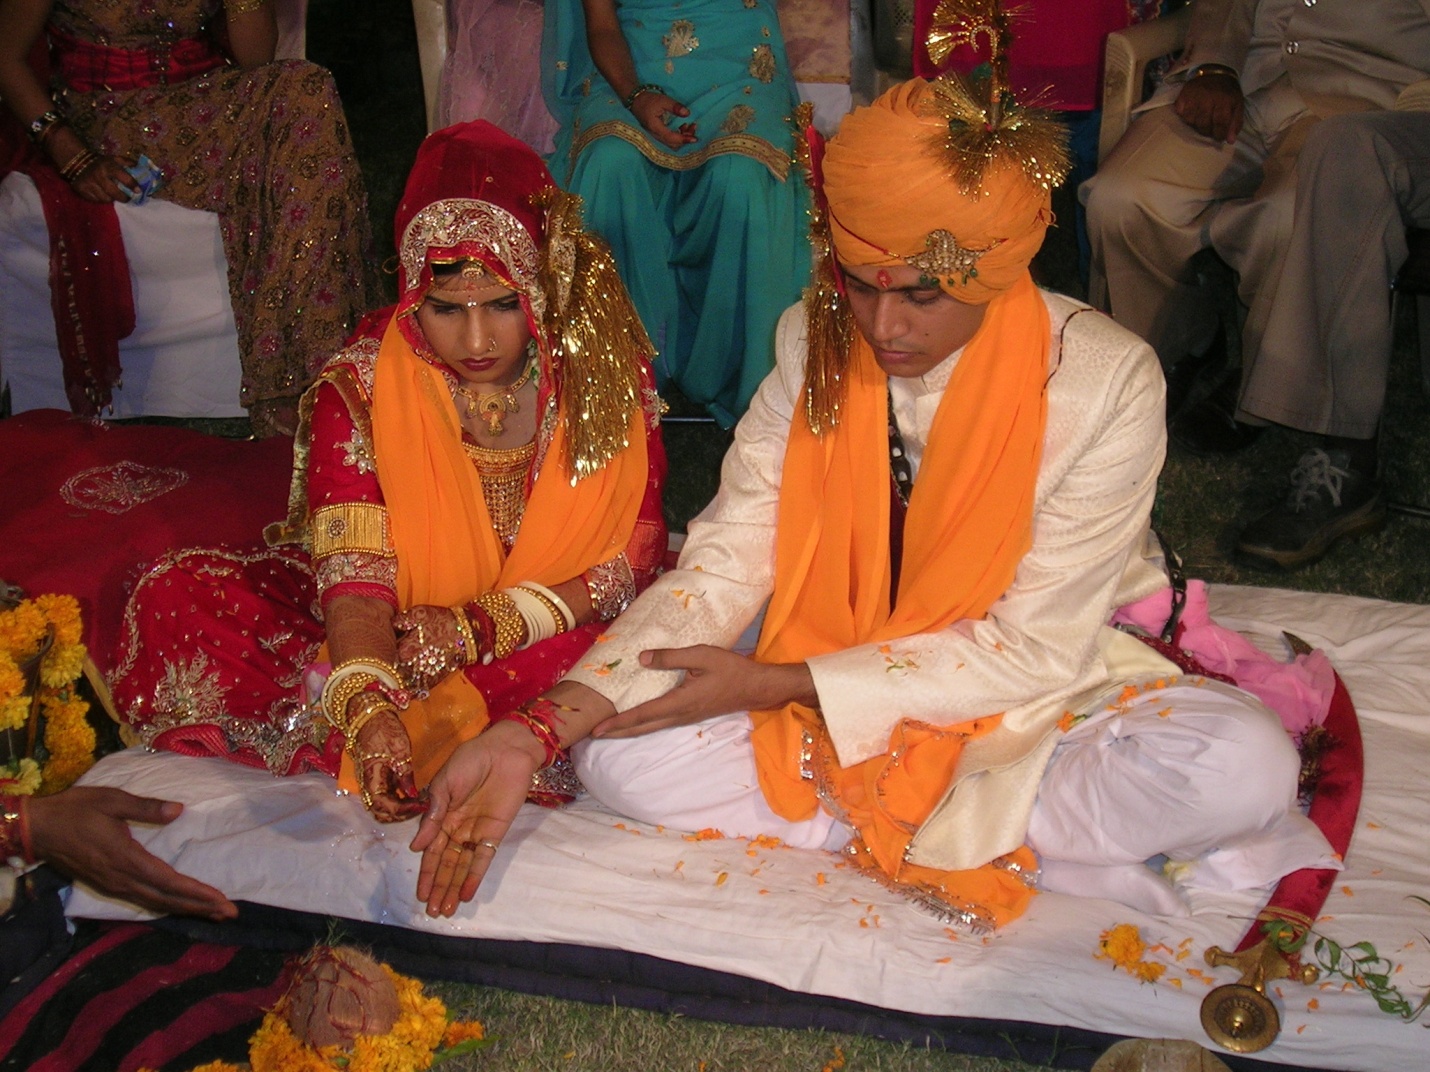 Il matrimonio indù